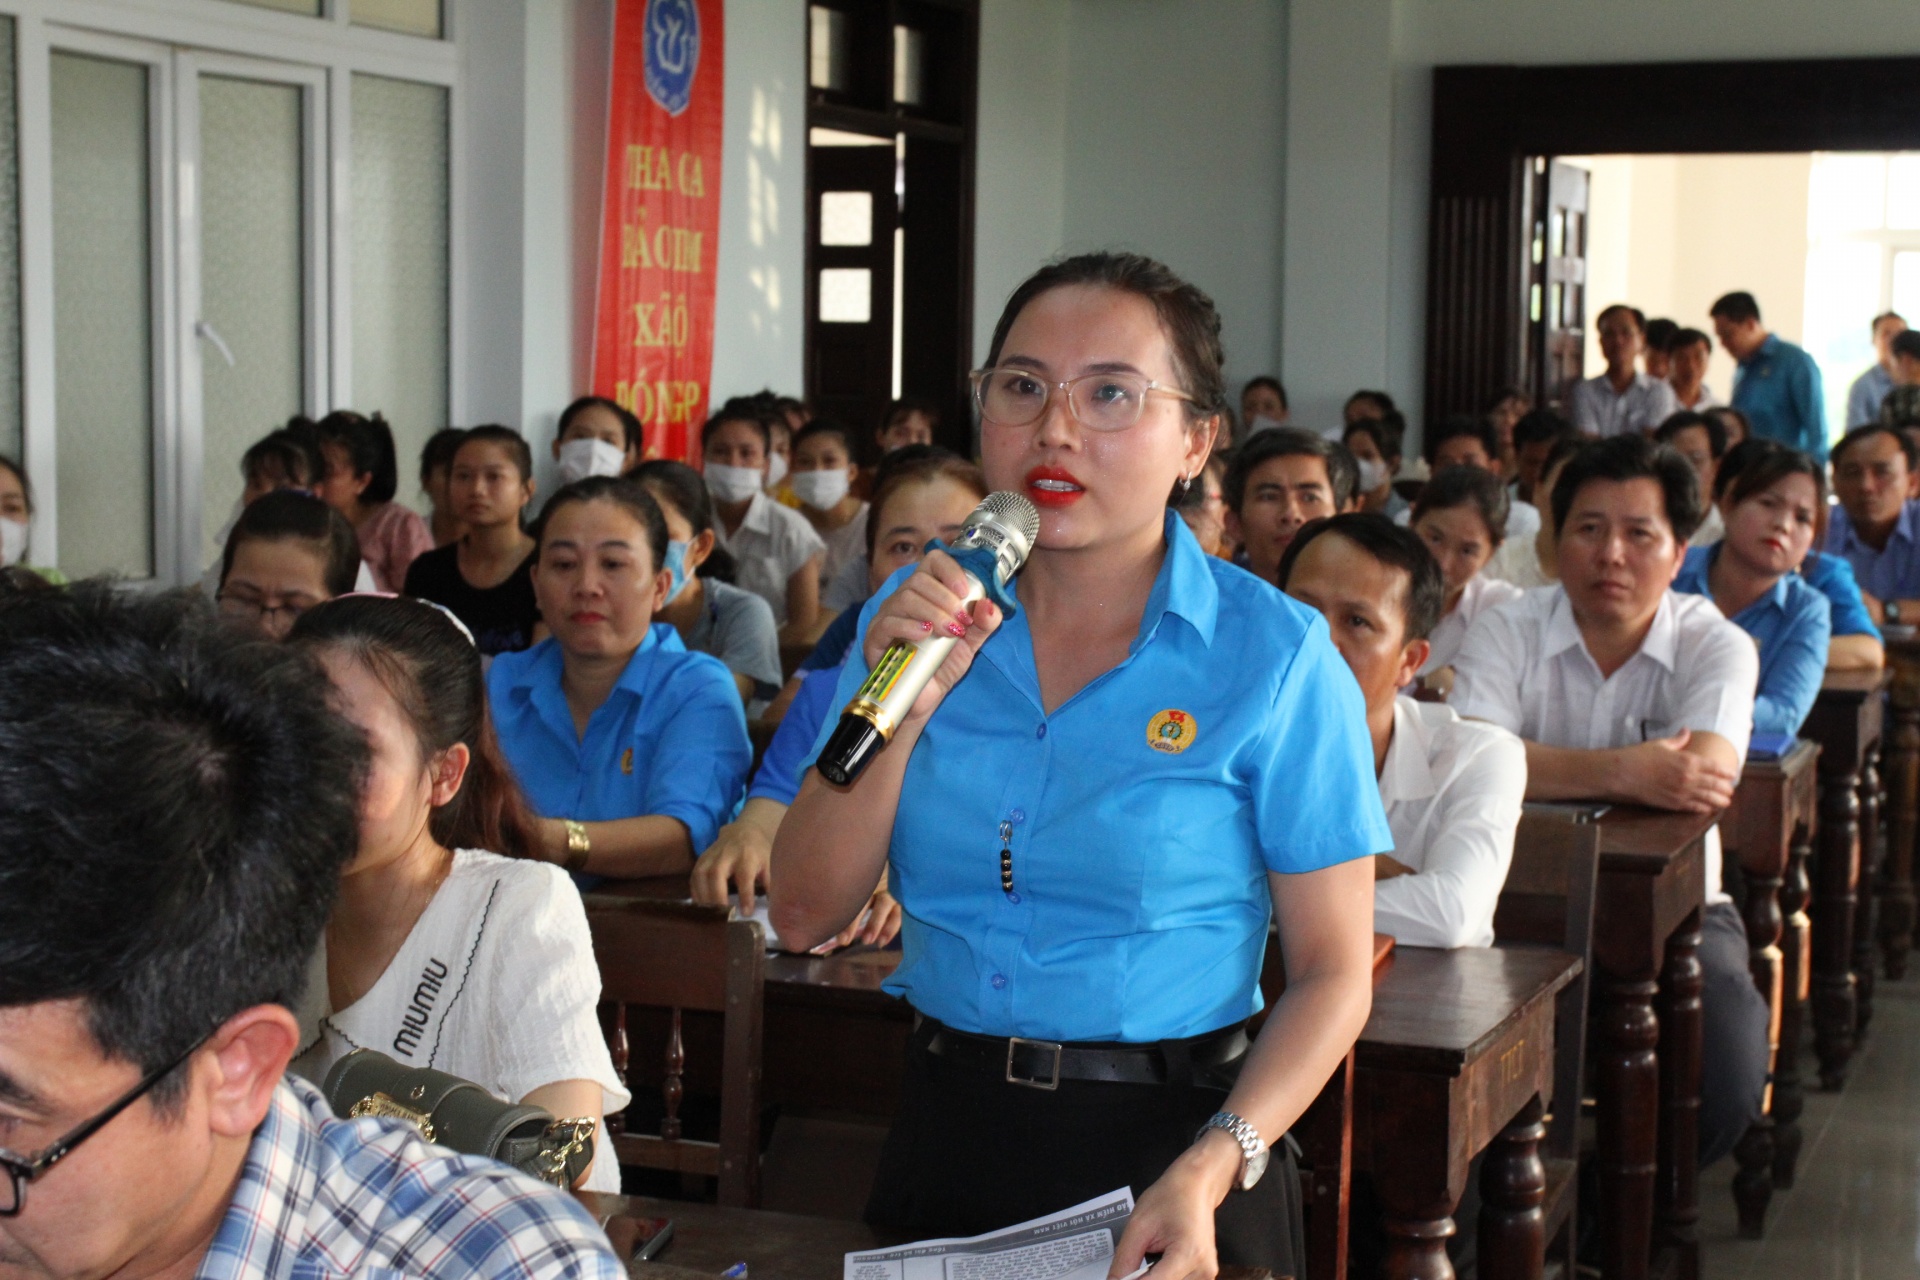 Video trích cảnh "Đối thoại tháng 5" giữa sở ngành, cơ quan chức năng tỉnh Thừa Thiên Huế với gần 200 CNLĐ tại huyện Phú Vang